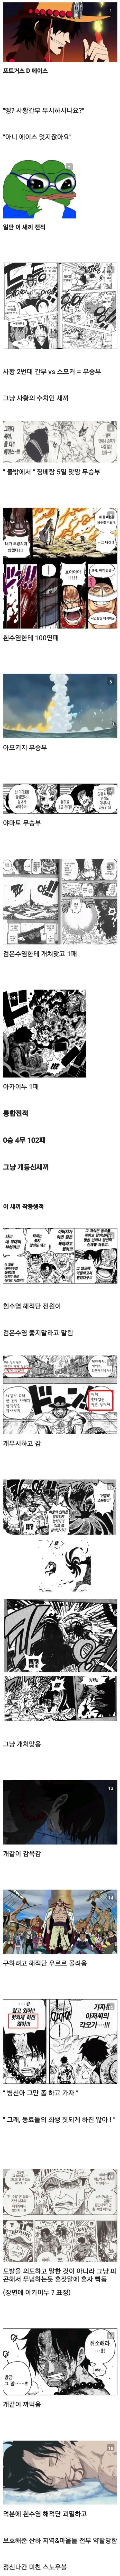 원피스 최고의 민폐캐릭터...JPG | mbong.kr 엠봉